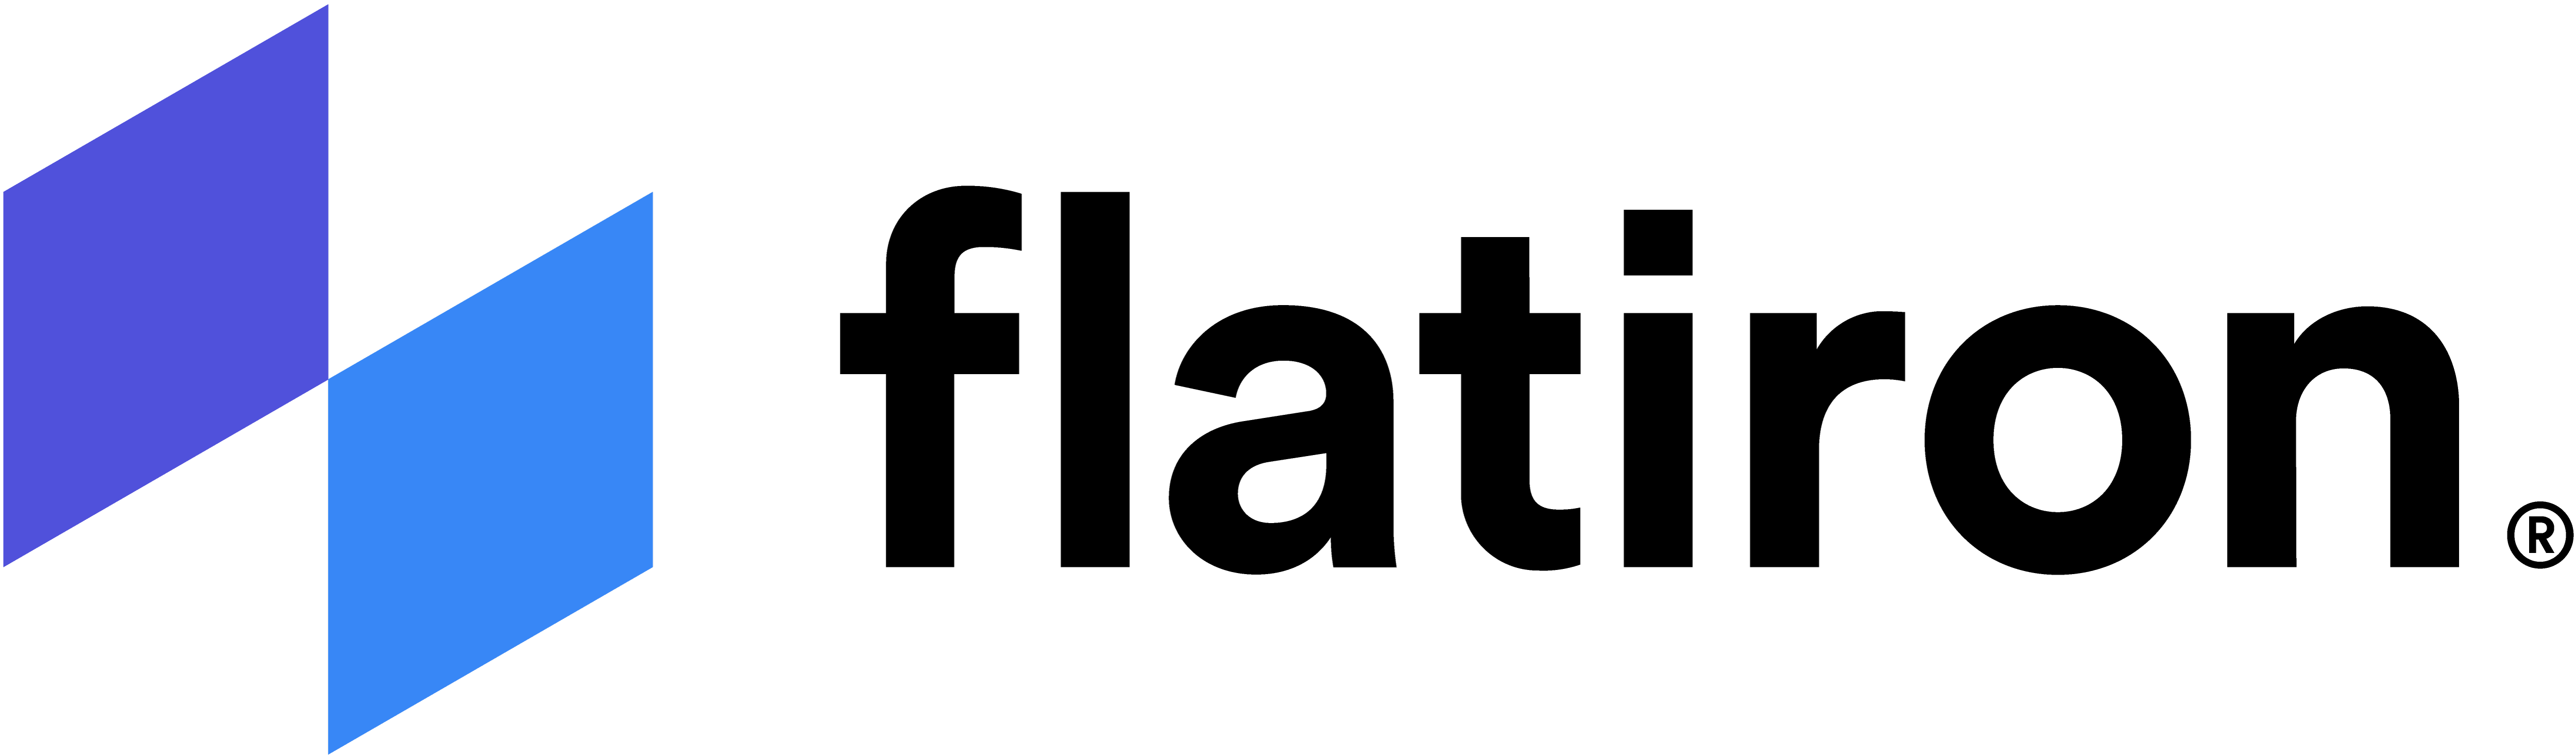 flatiron-logo